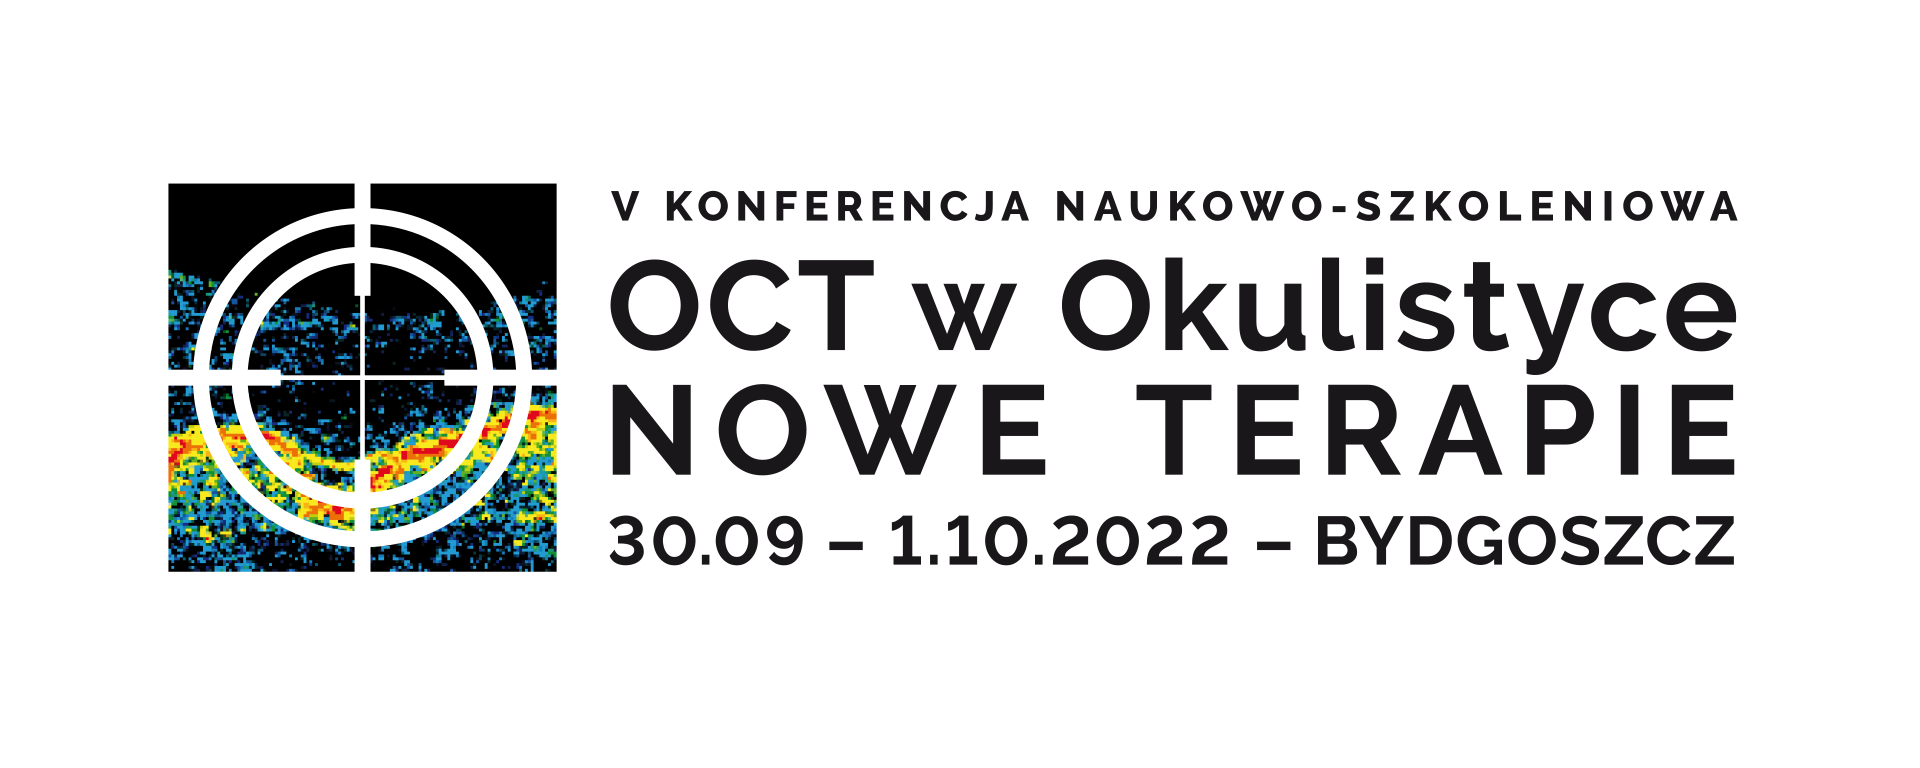 [:pl]V Konferencja Naukowo - Szkoleniowa  OCT w Okulistyce NOWE TERAPIE[:]